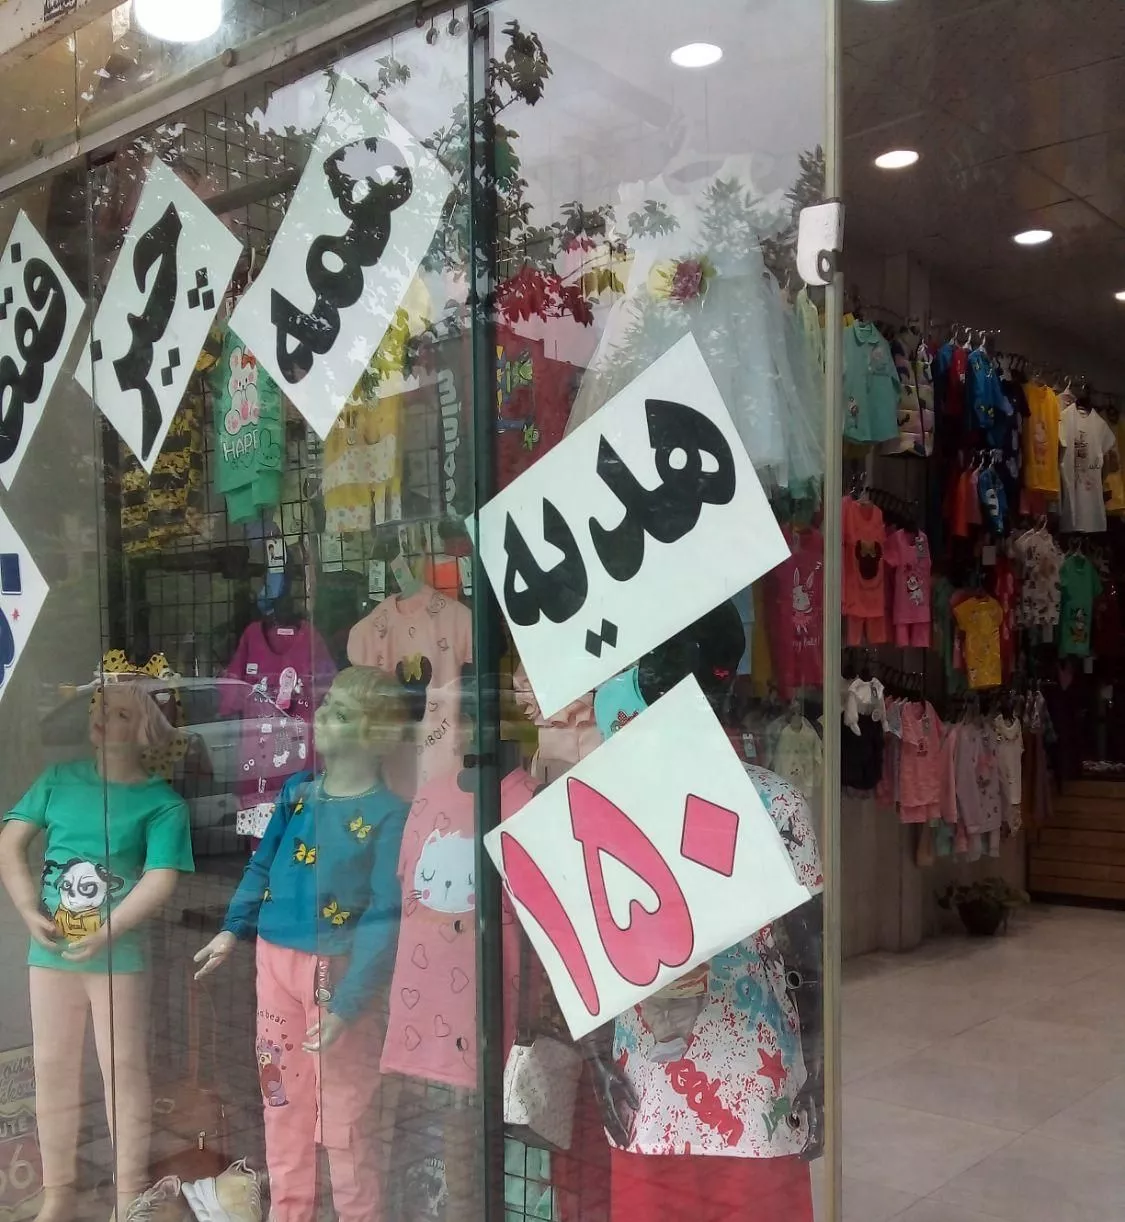 واگذاری مغازه پوشاک بچگانه حاشیه بلوار